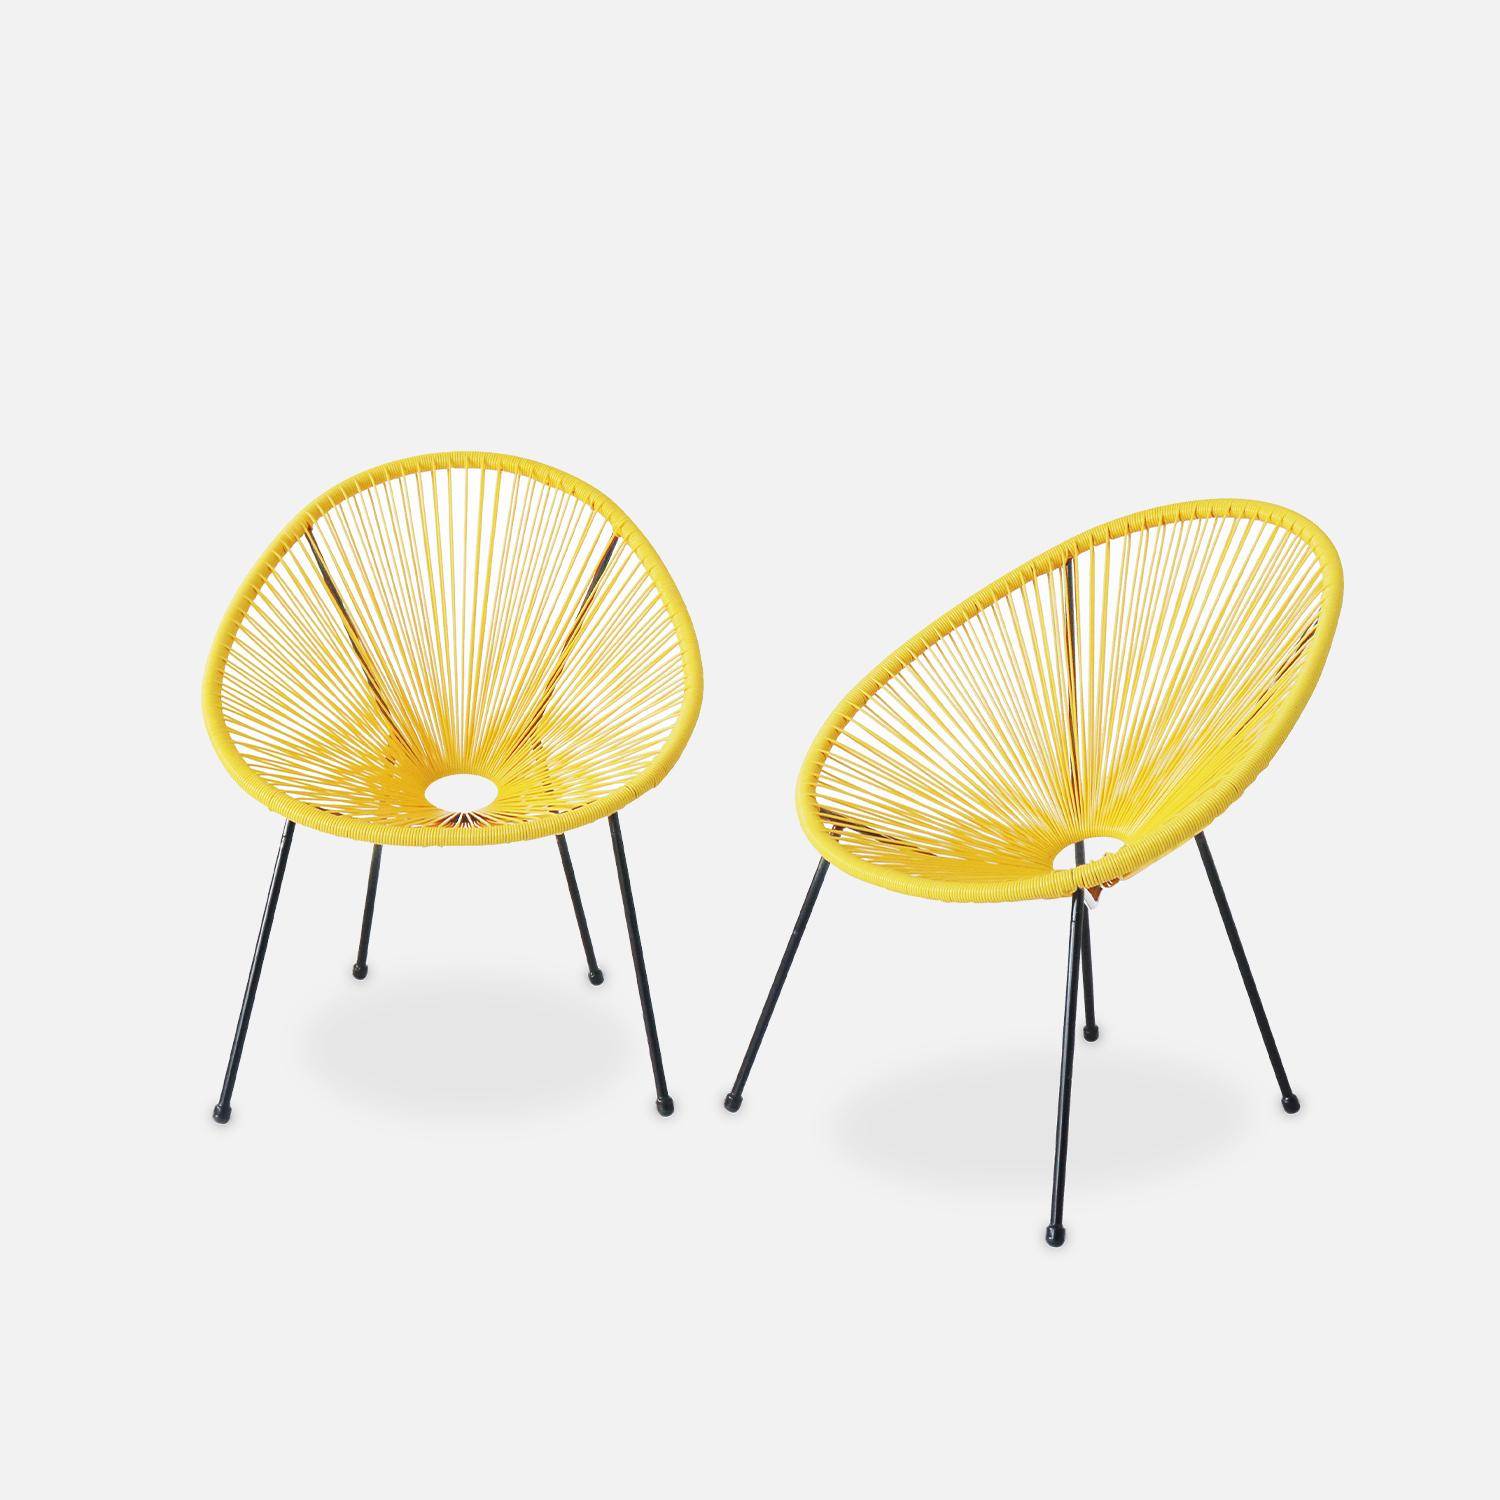 Set van 2 design stoelen ei-vormig - Acapulco Geel  - Stoelen 4 poten retro design, plastic koorden, binnen/buiten Photo2